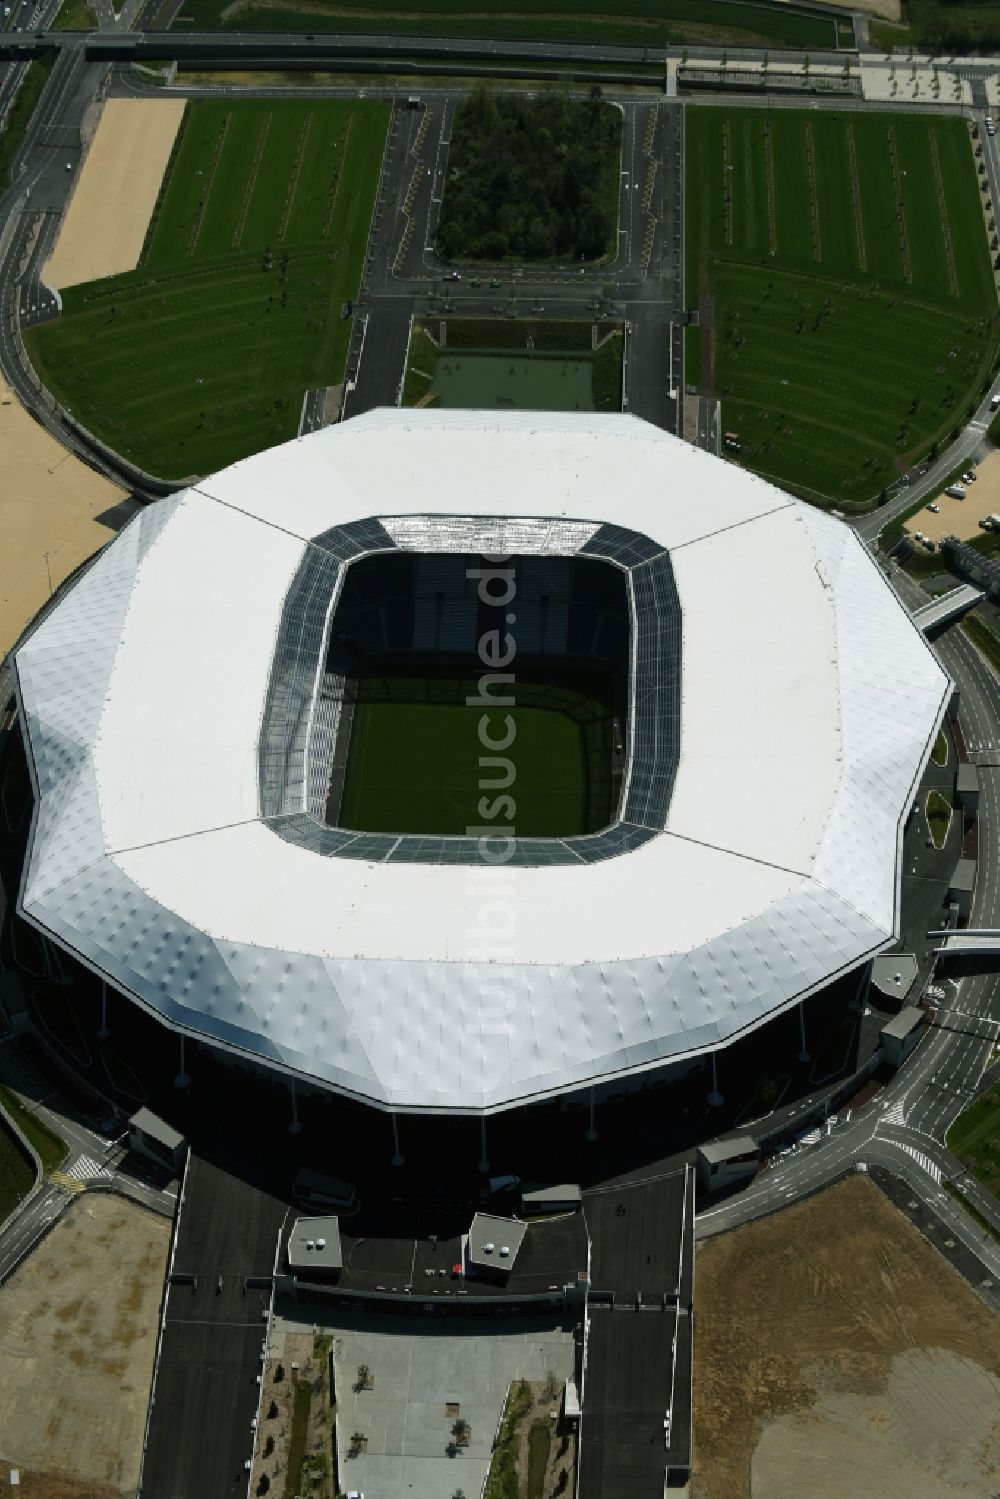 Lyon Decines-Charpieu von oben - Sportstätten-Gelände der Arena des Stadion in Lyon Decines-Charpieu in Auvergne Rhone-Alpes, Frankreich